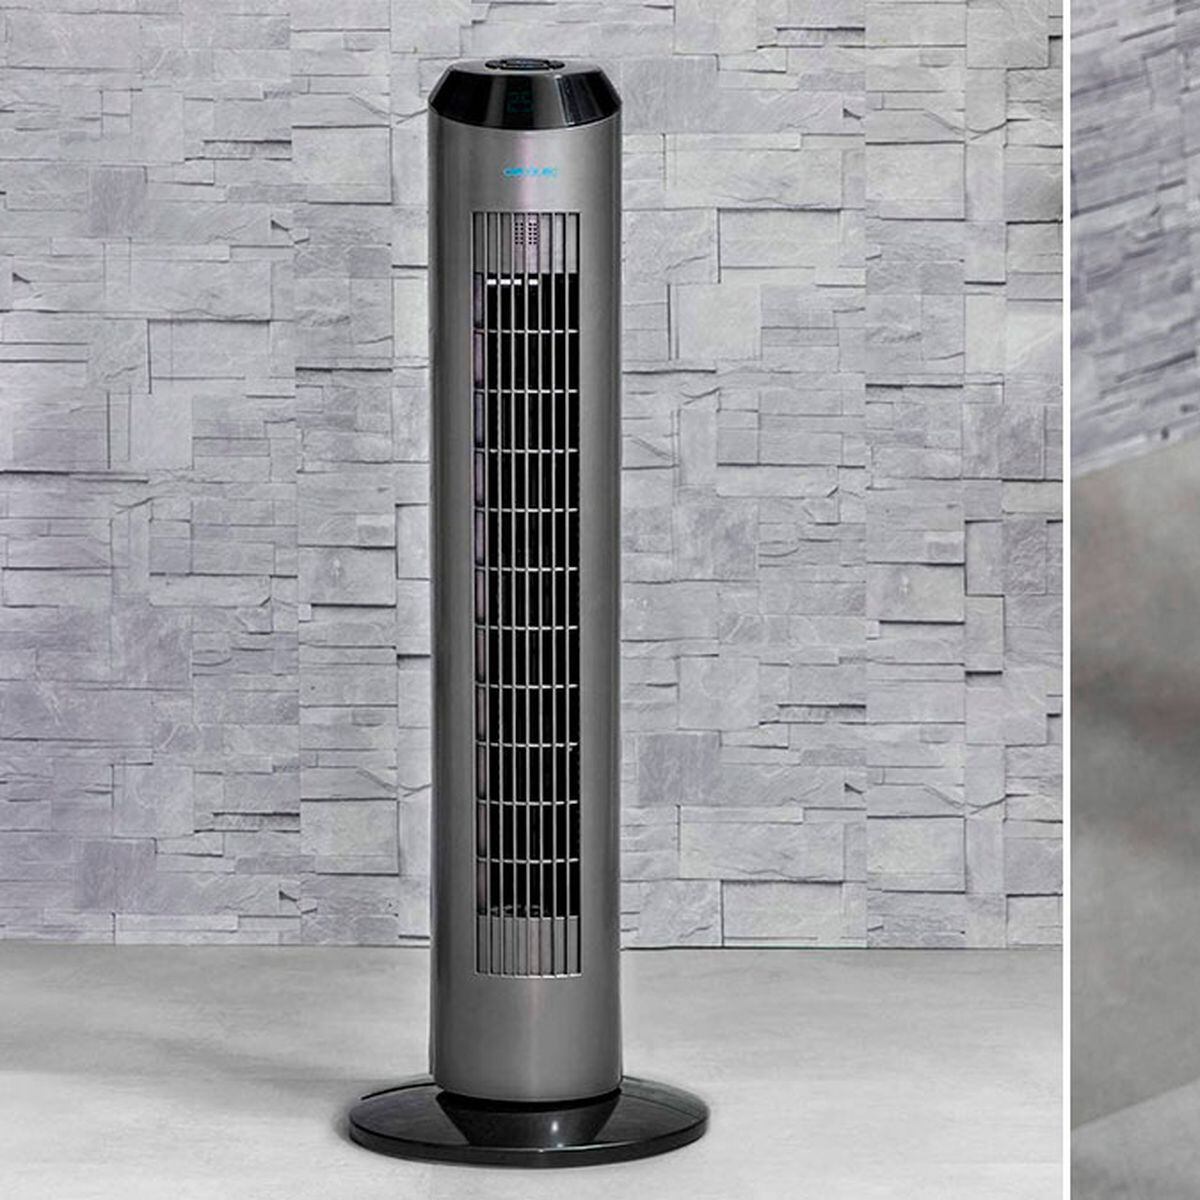 Es potente da aire frío”: así el ventilador torre con ionizador de corriente limpia - Showroom